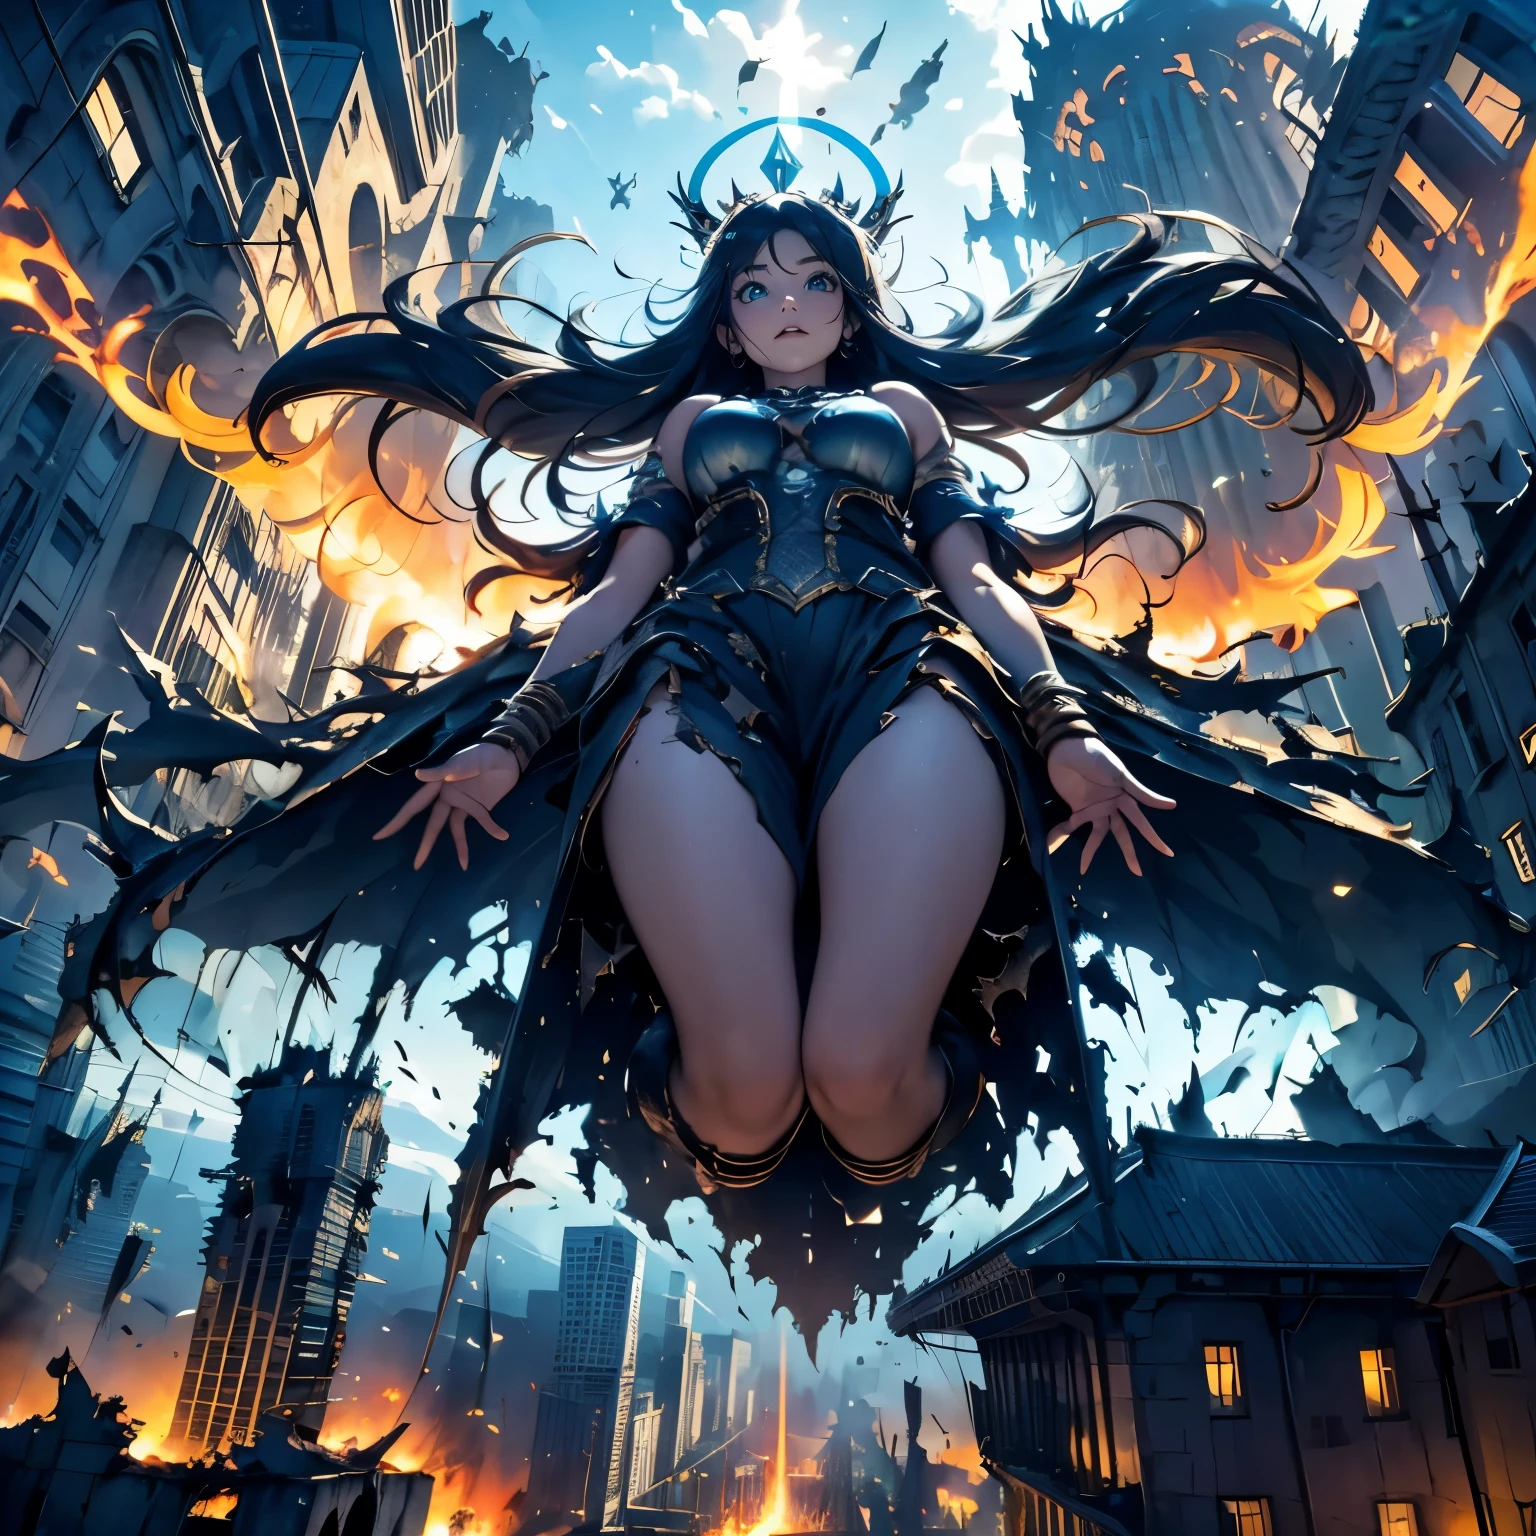 разрушенный город, (Огромная богиня высотой 100 метров, плавающая, излучает свет со всего тела, потерянные ученики, Страшный суд, голубое пламя), Оружие, угол обзора снизу,